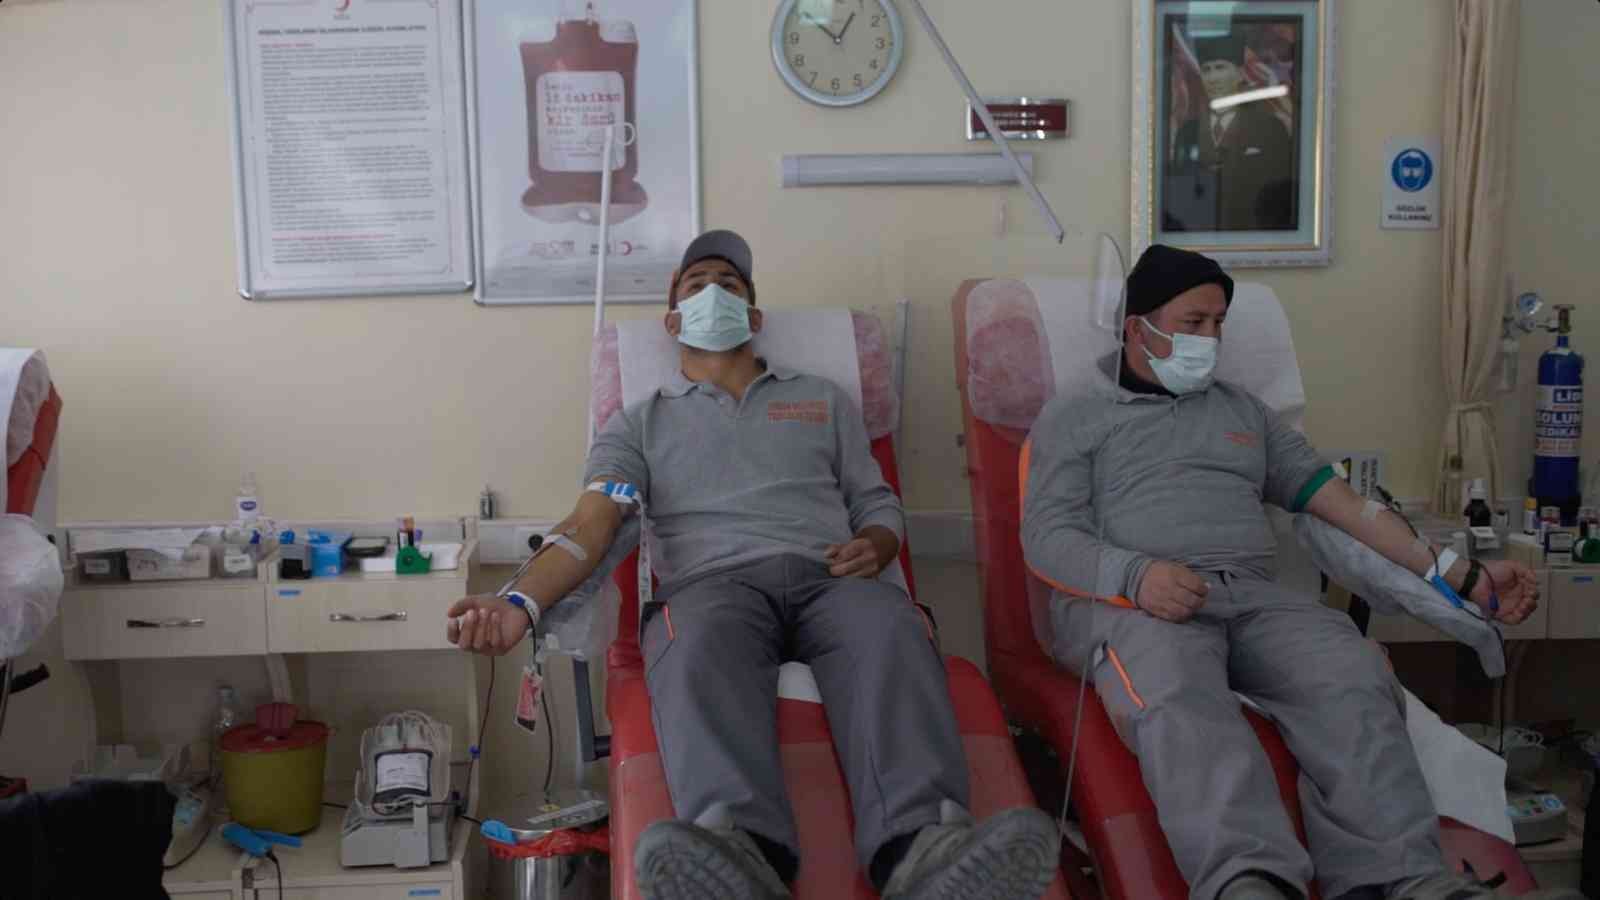 Sincan Belediyesi çalışanları Kızılay’a kan bağışında bulundu #ankara